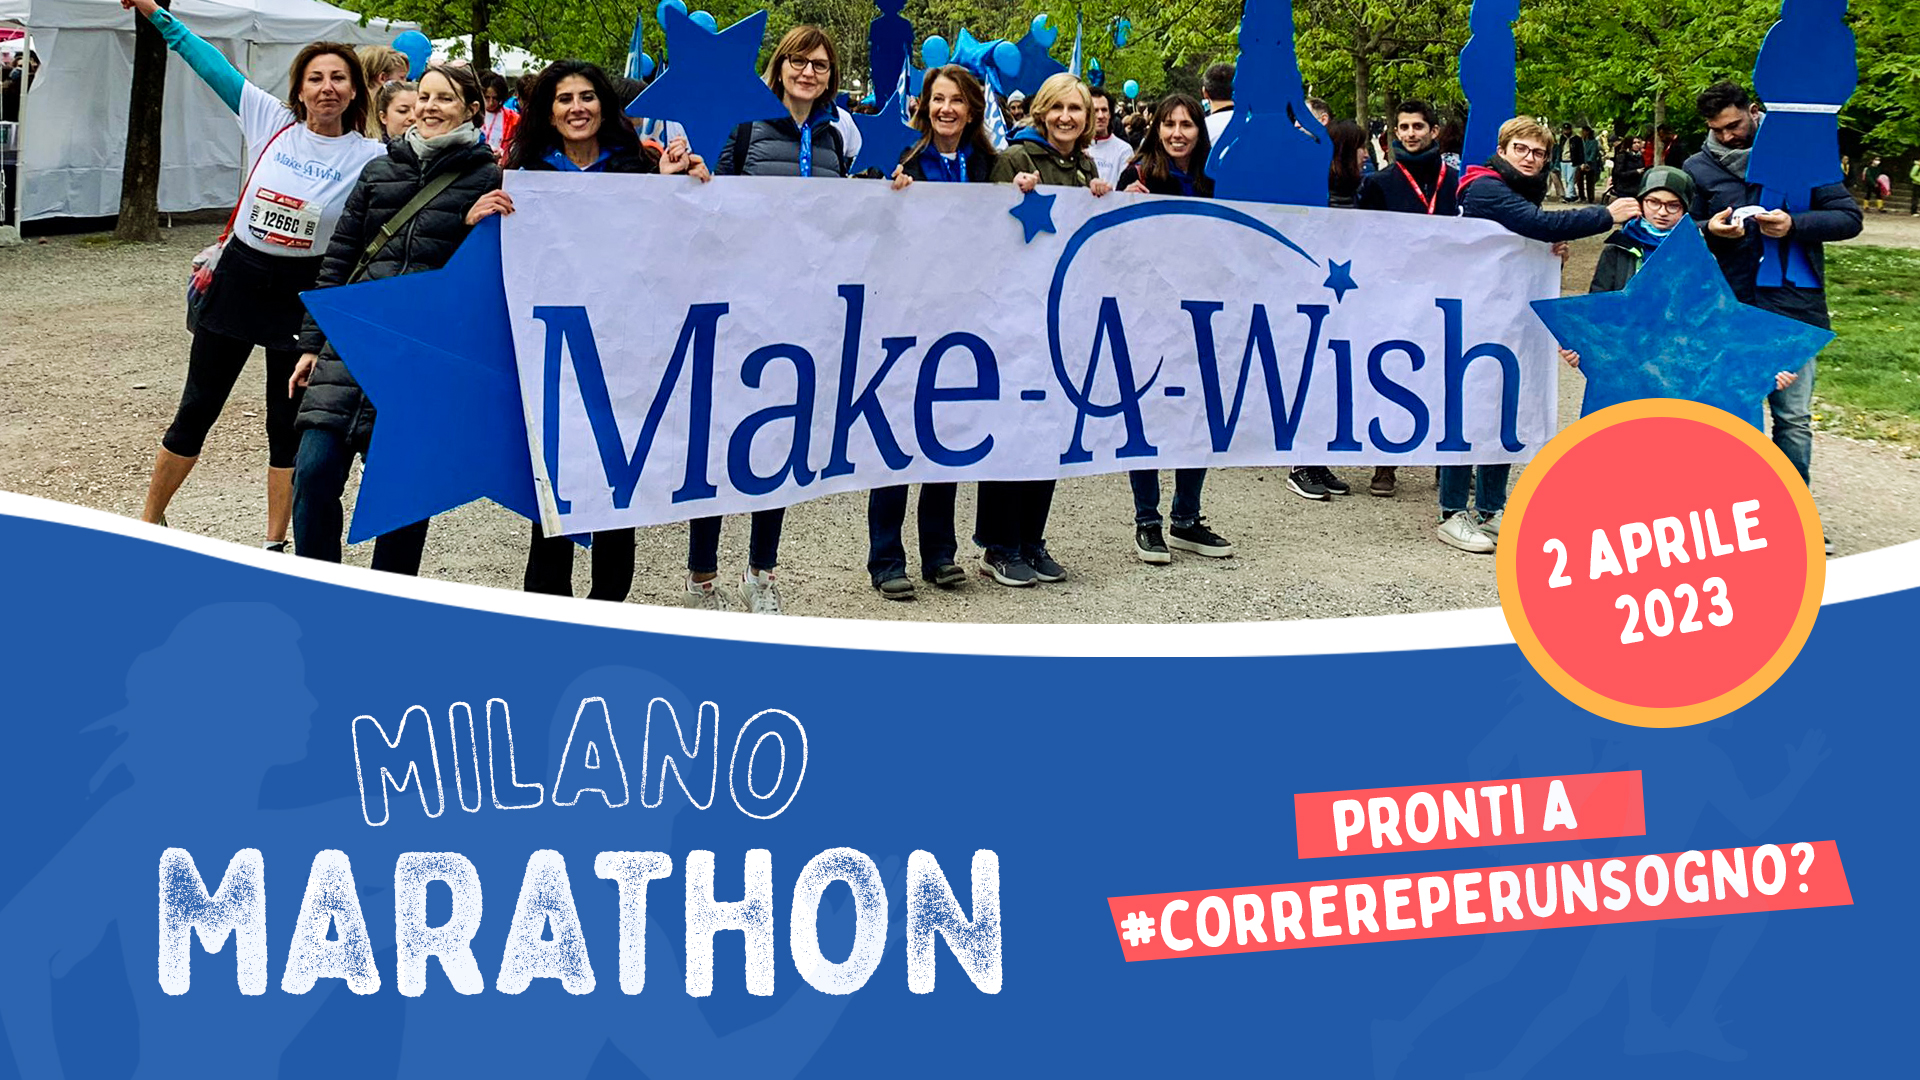 #CorriPerUnsogno-Make-A-Wish Italia